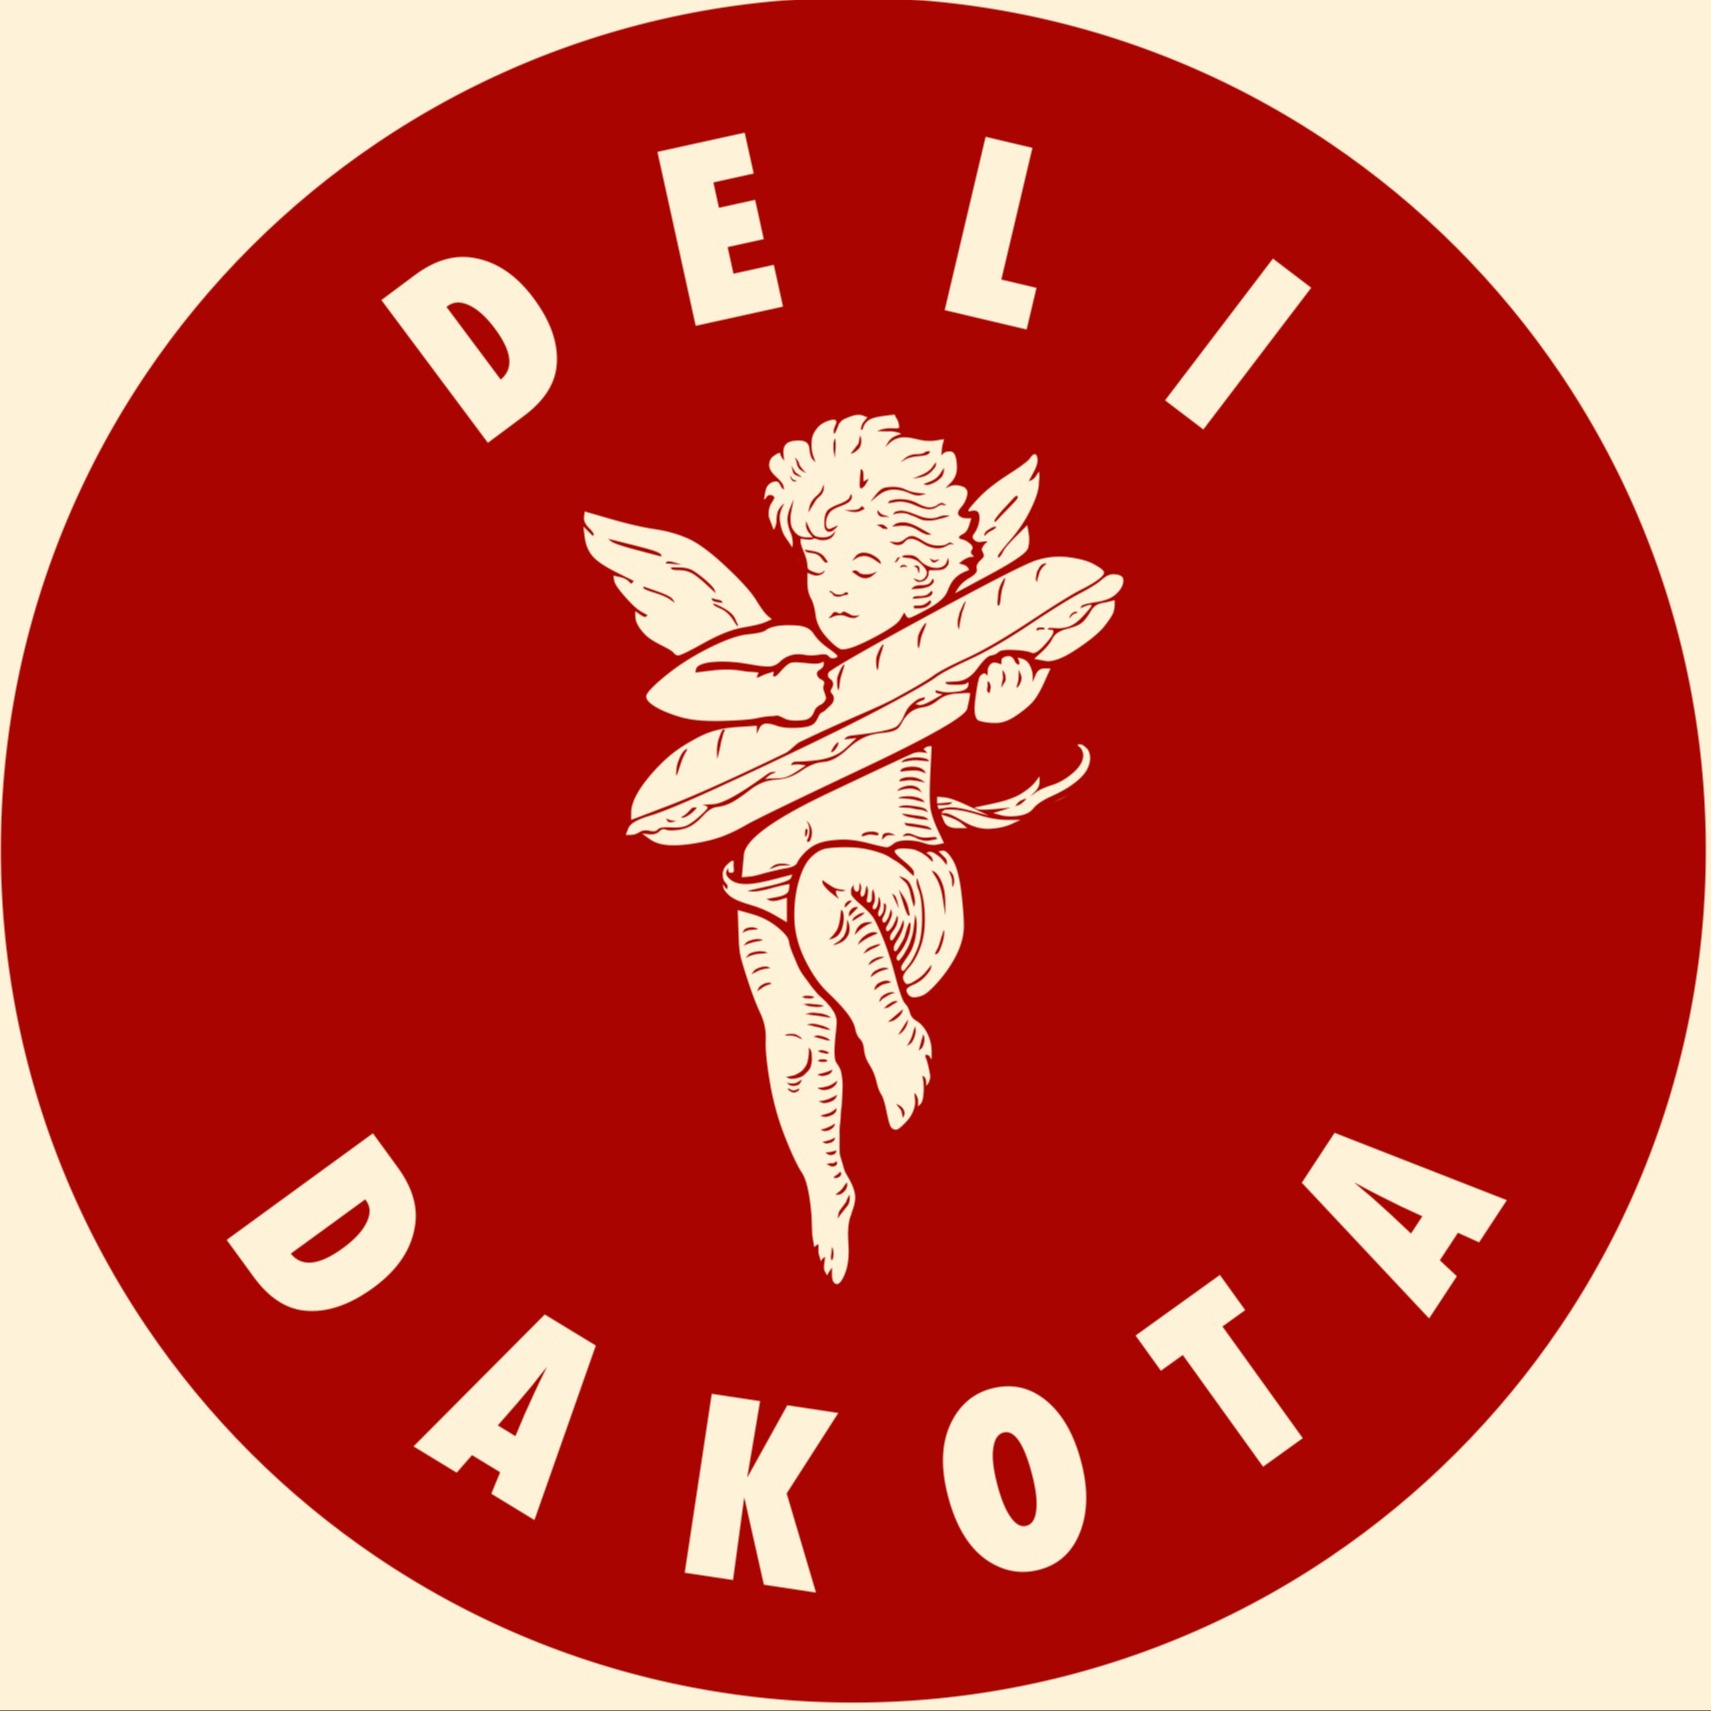 Deli Dakota Specialty Coffee & Sandwiches